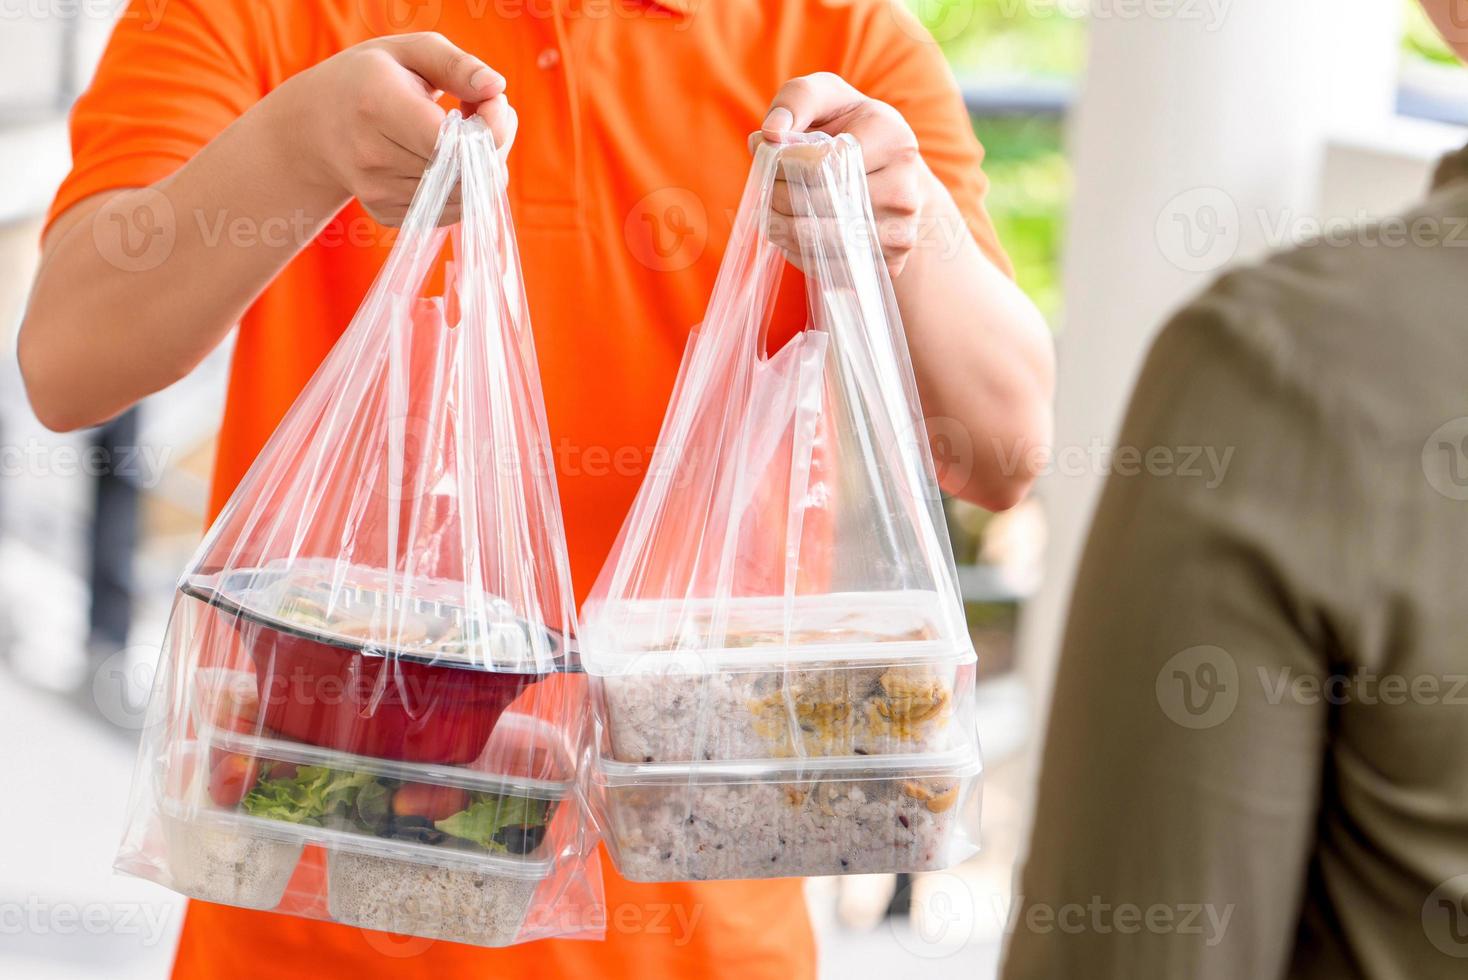 lieferbote in orangefarbener uniform liefert asiatische lebensmittelboxen in plastiktüten an einen kunden zu hause foto